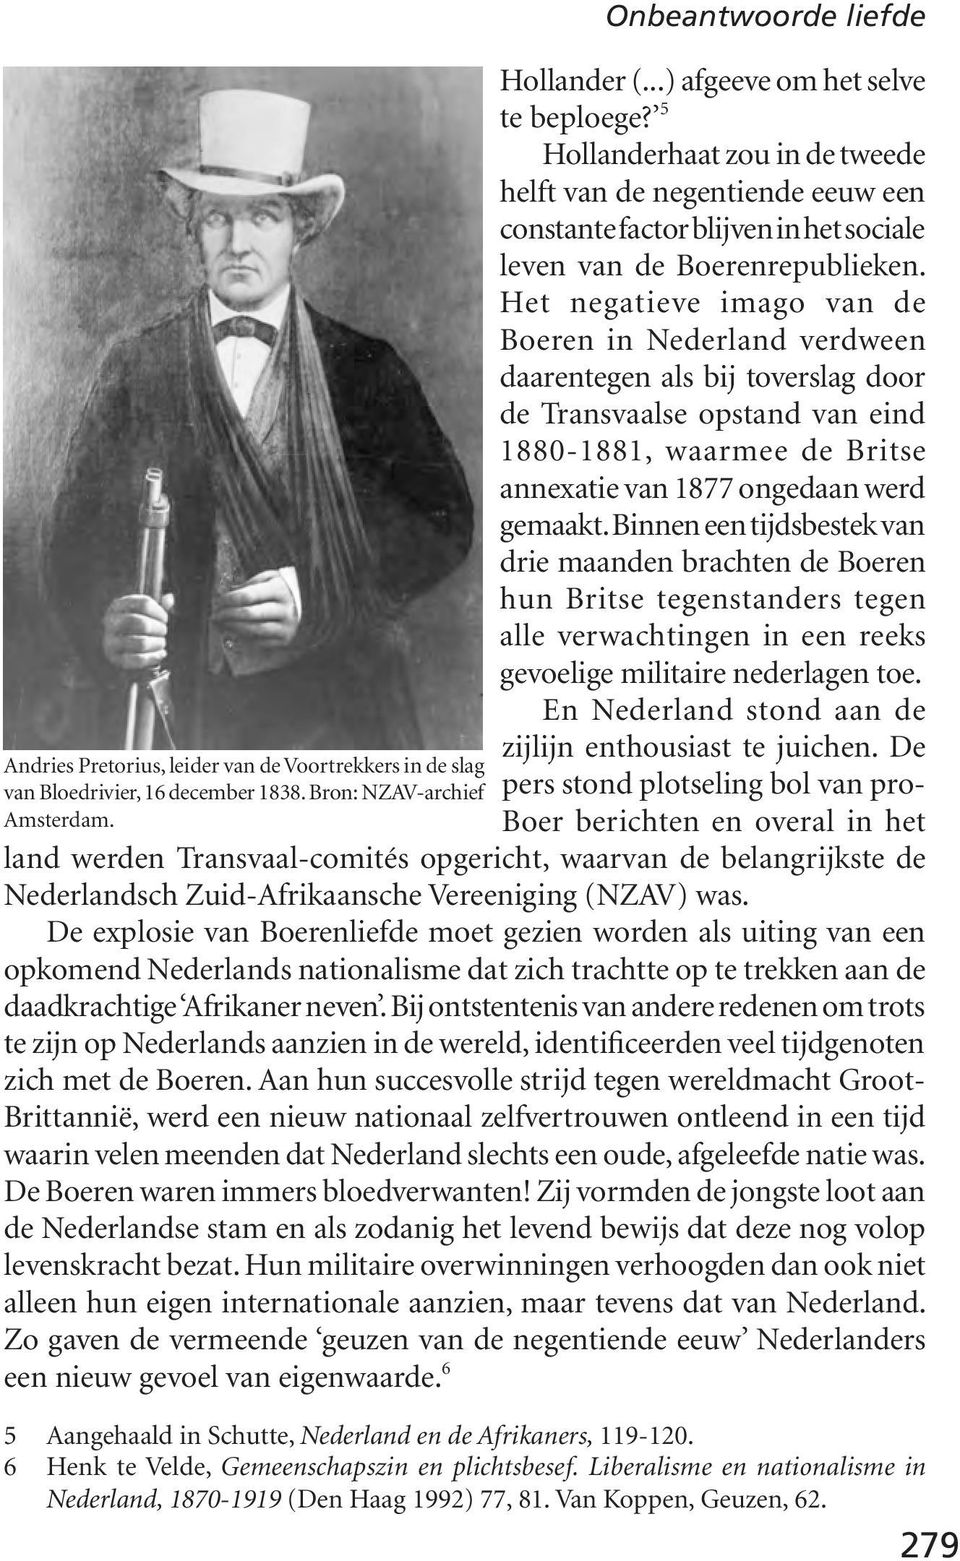 Het negatieve imago van de Boeren in Nederland verdween daarentegen als bij toverslag door de Transvaalse opstand van eind 1880-1881, waarmee de Britse annexatie van 1877 ongedaan werd gemaakt.